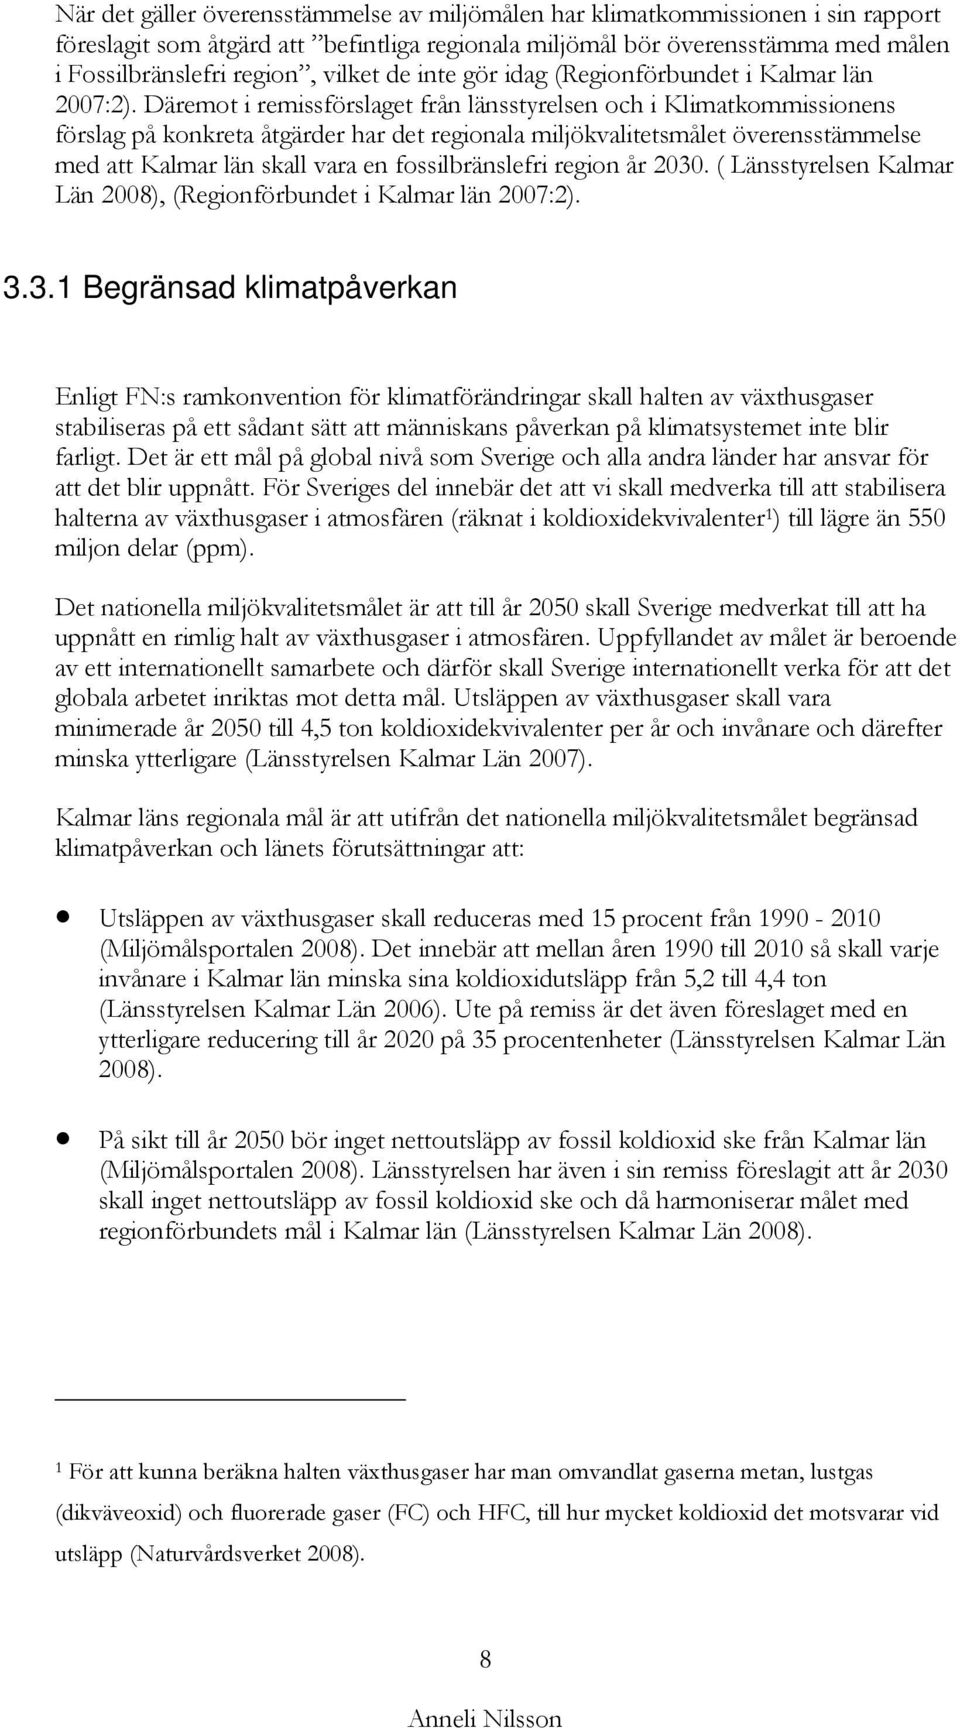 Däremot i remissförslaget från länsstyrelsen och i Klimatkommissionens förslag på konkreta åtgärder har det regionala miljökvalitetsmålet överensstämmelse med att Kalmar län skall vara en